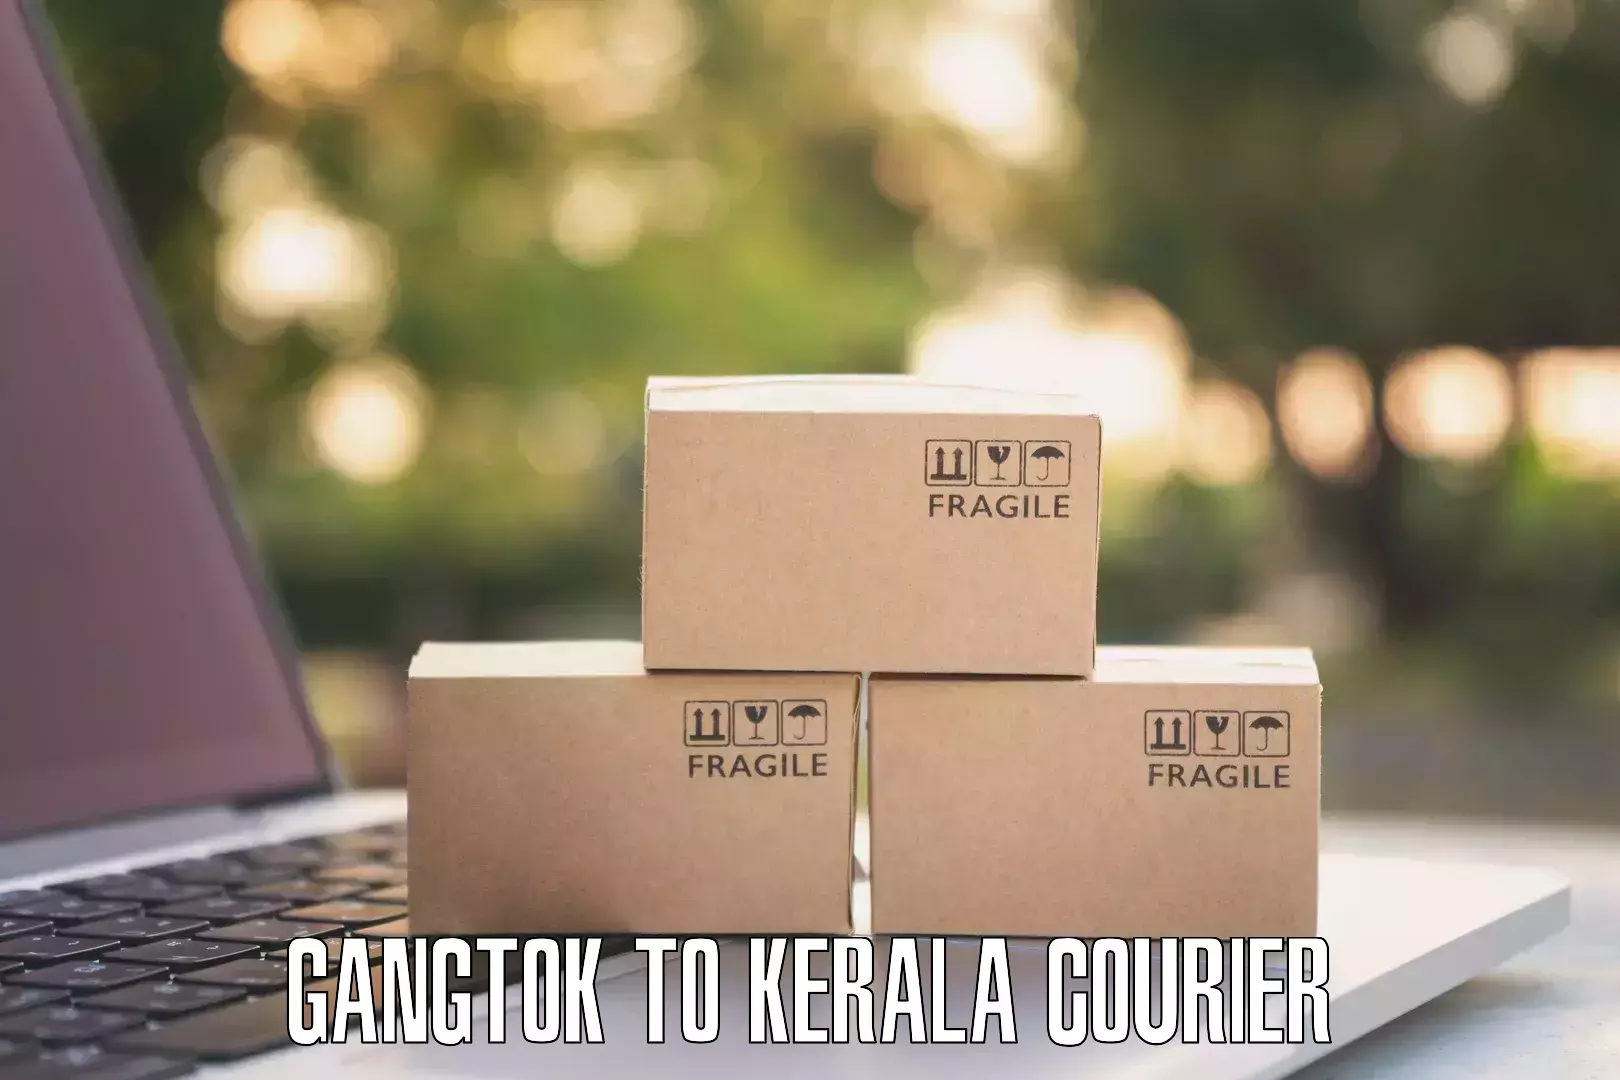 Efficient parcel service Gangtok to Agali